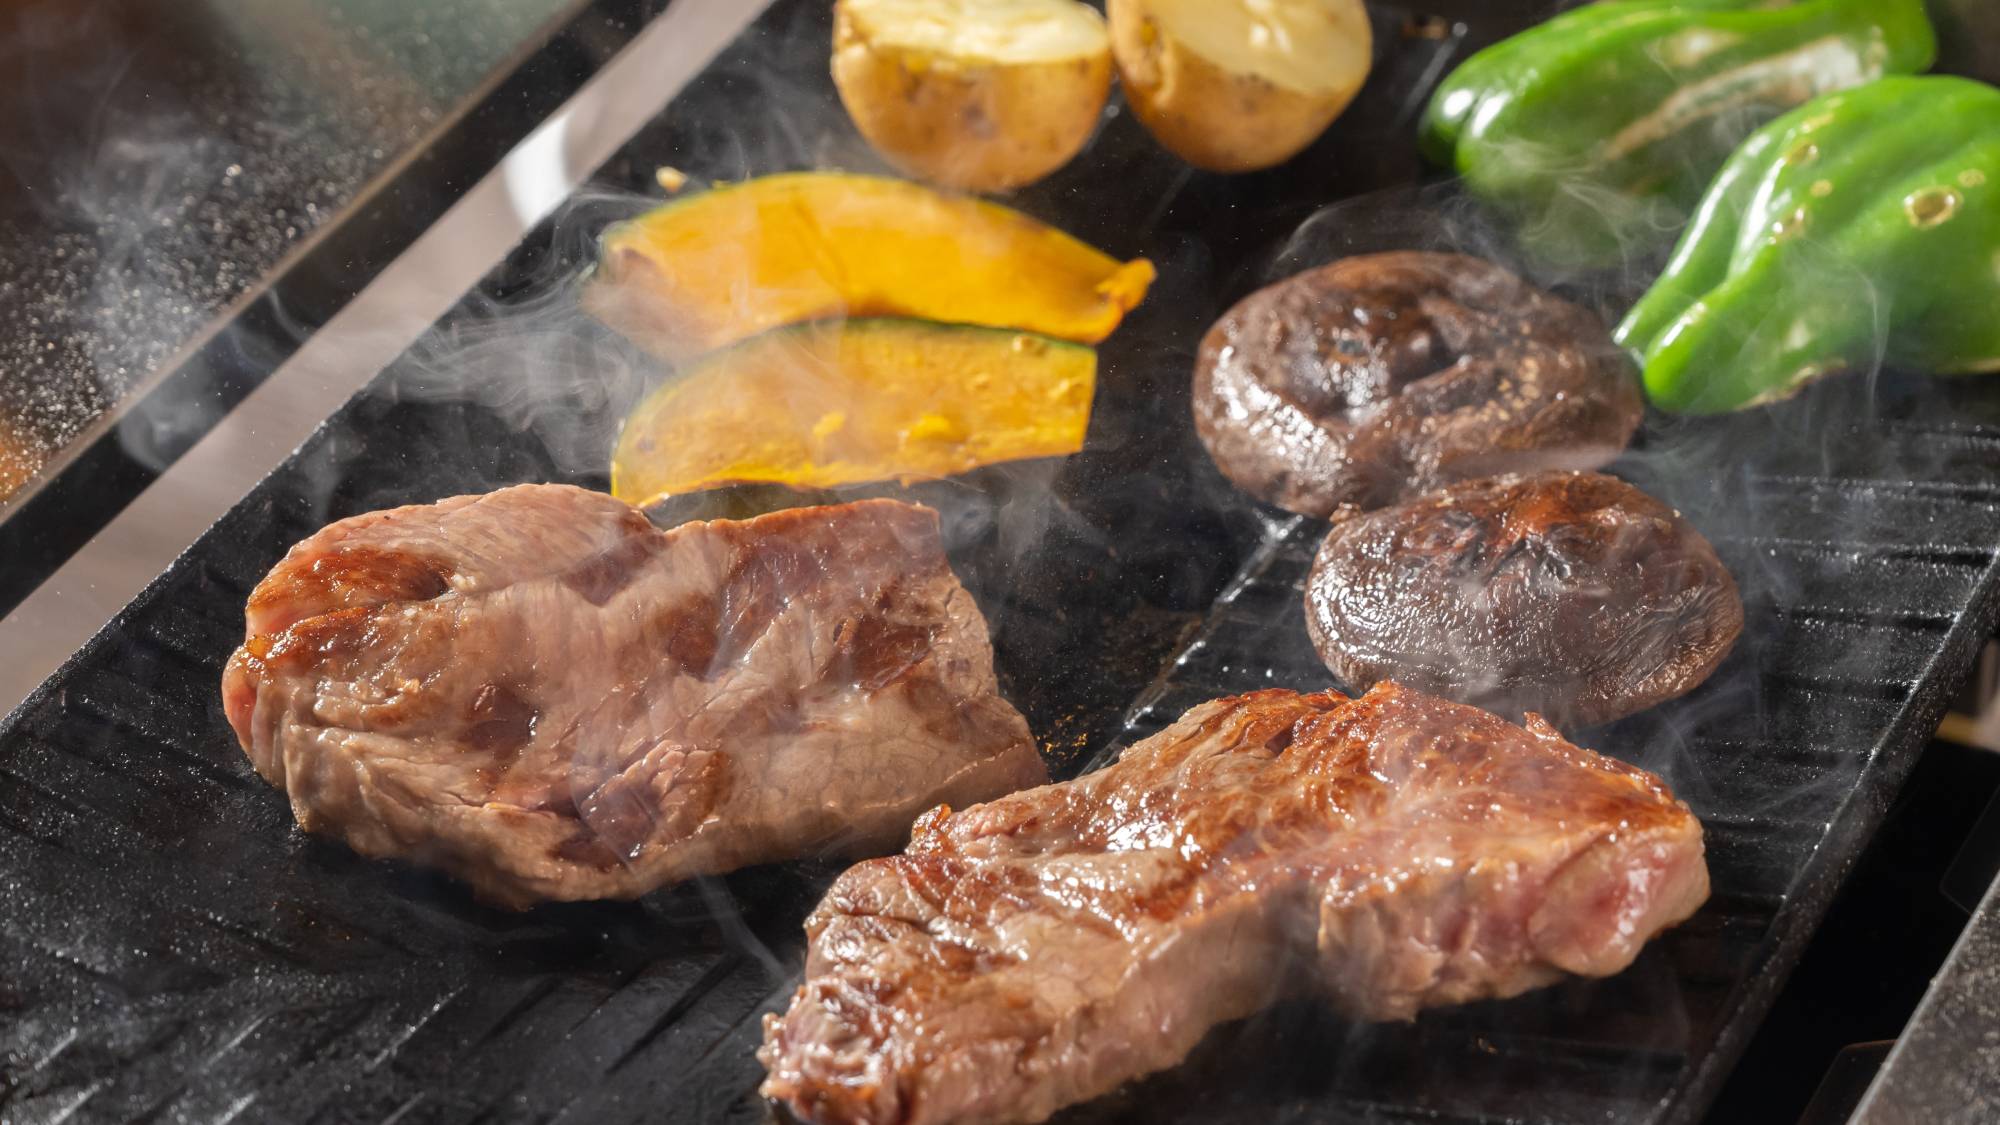 「ジュー」と焼ける肉の音、美味しそうな色に変化する食材たち。BBQの醍醐味を満喫♪